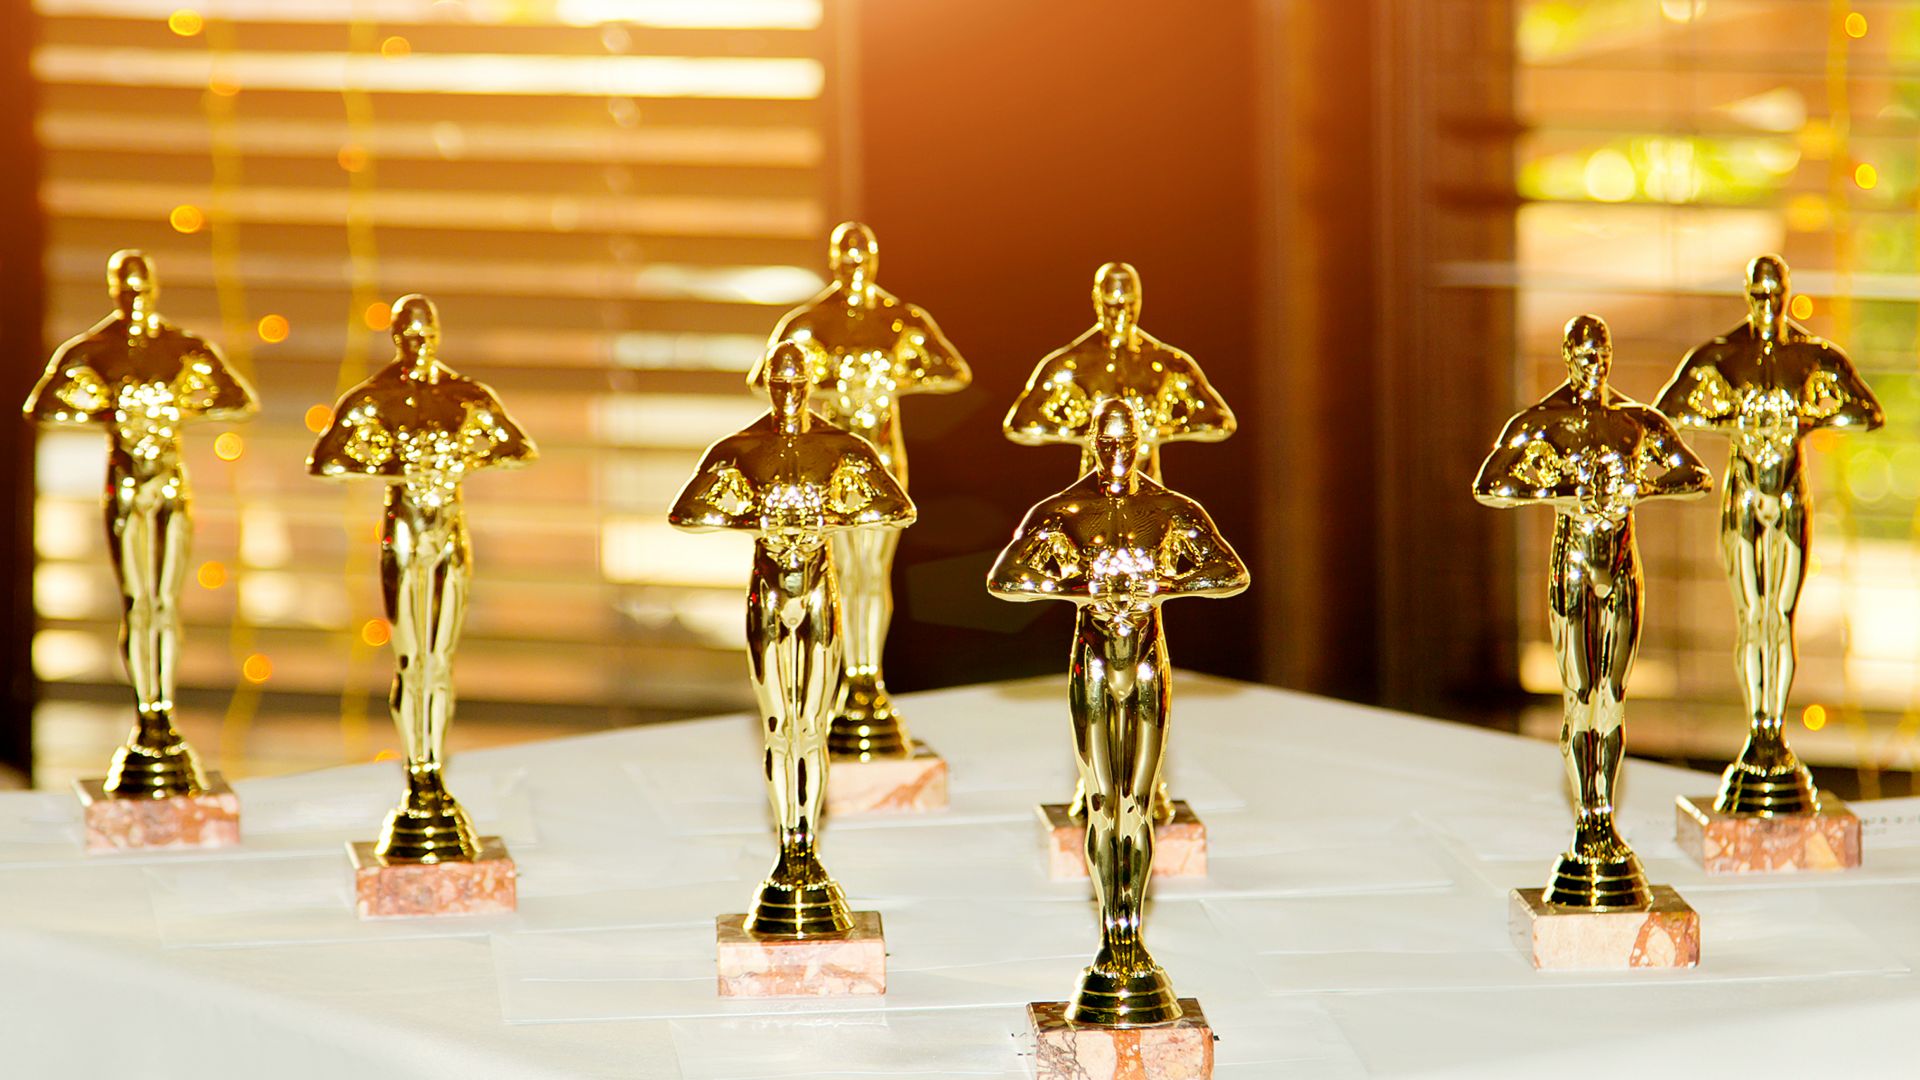 "Рома" ще спечели най-много Оскари според алгоритъма на Бинг